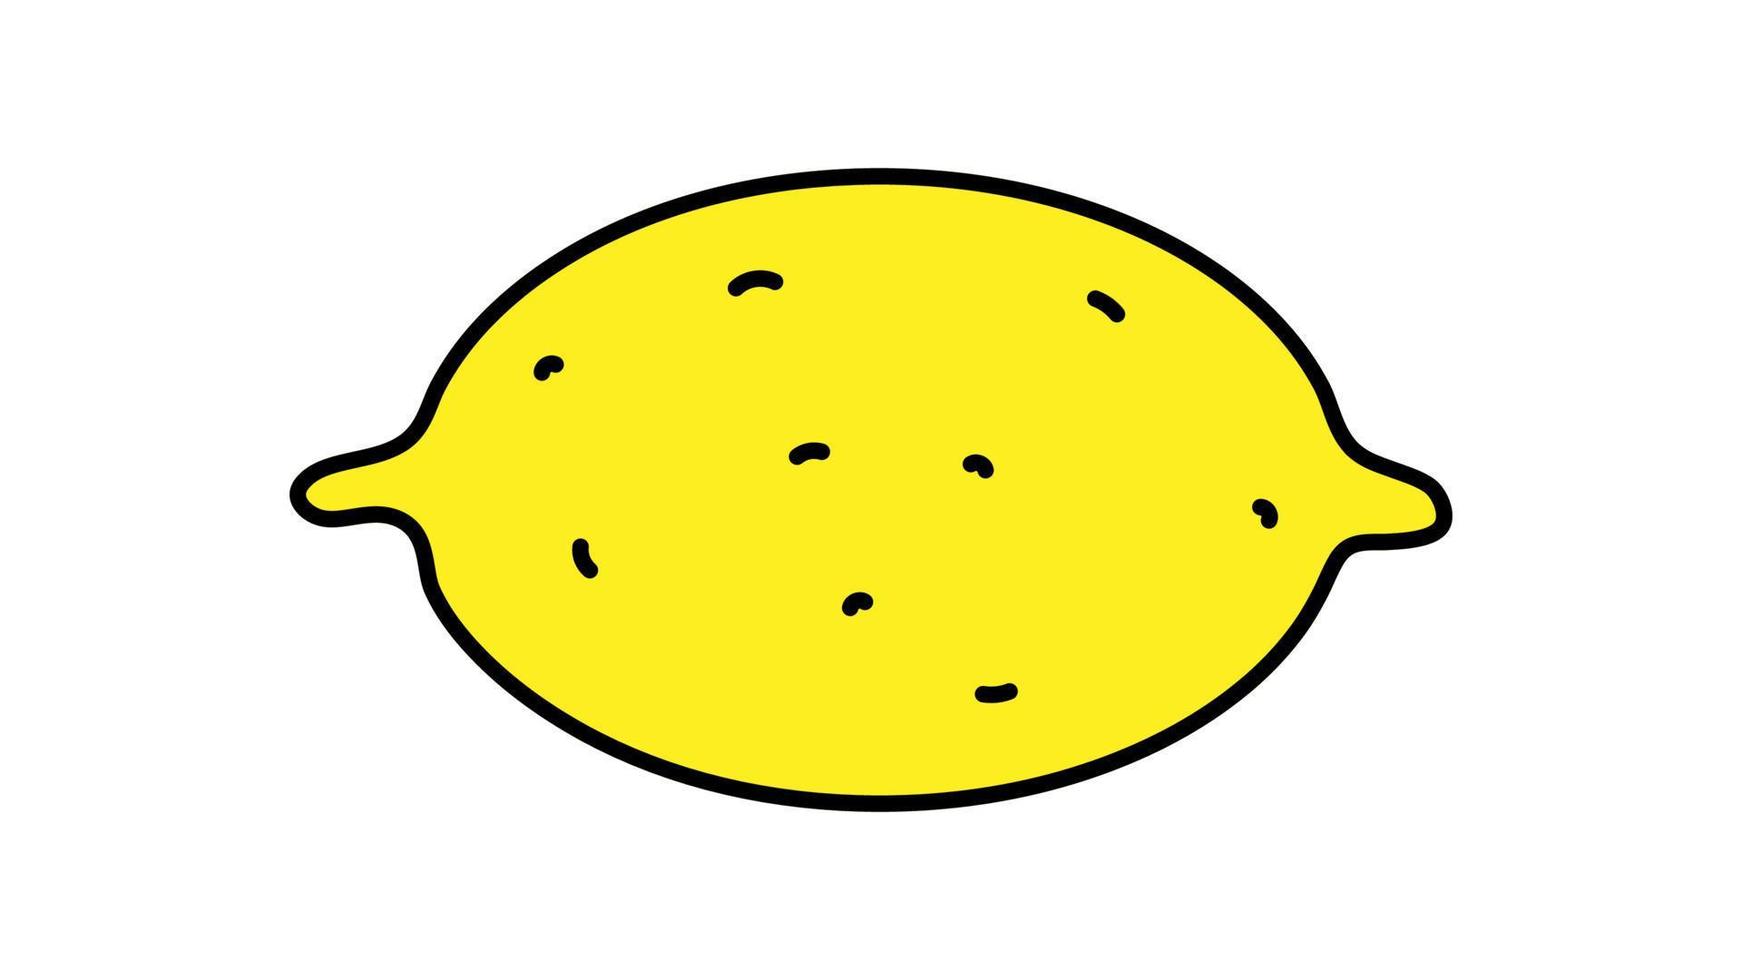 ljus, gul, aptitlig citron- på en vit bakgrund, vektor illustration. en frukt med en tjock hud. citron- teckning, vitamin mat, vegan mat, rå mat diet